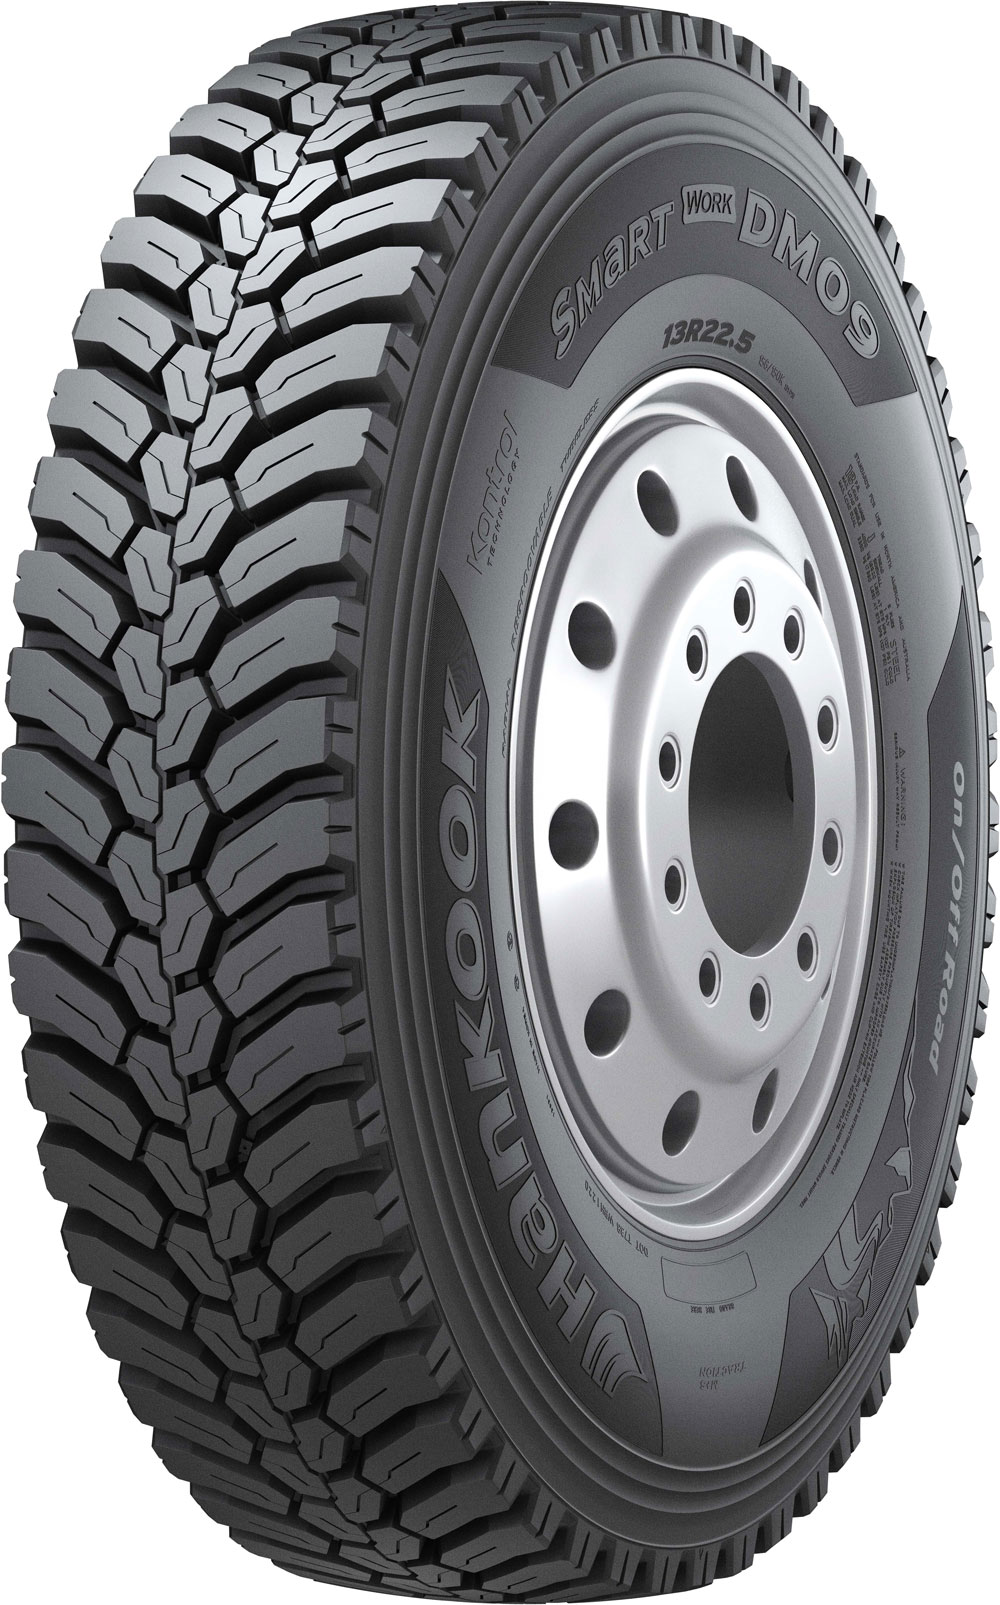 product_type-heavy_tires HANKOOK DM09 3PMSF 13 R22.5 156K